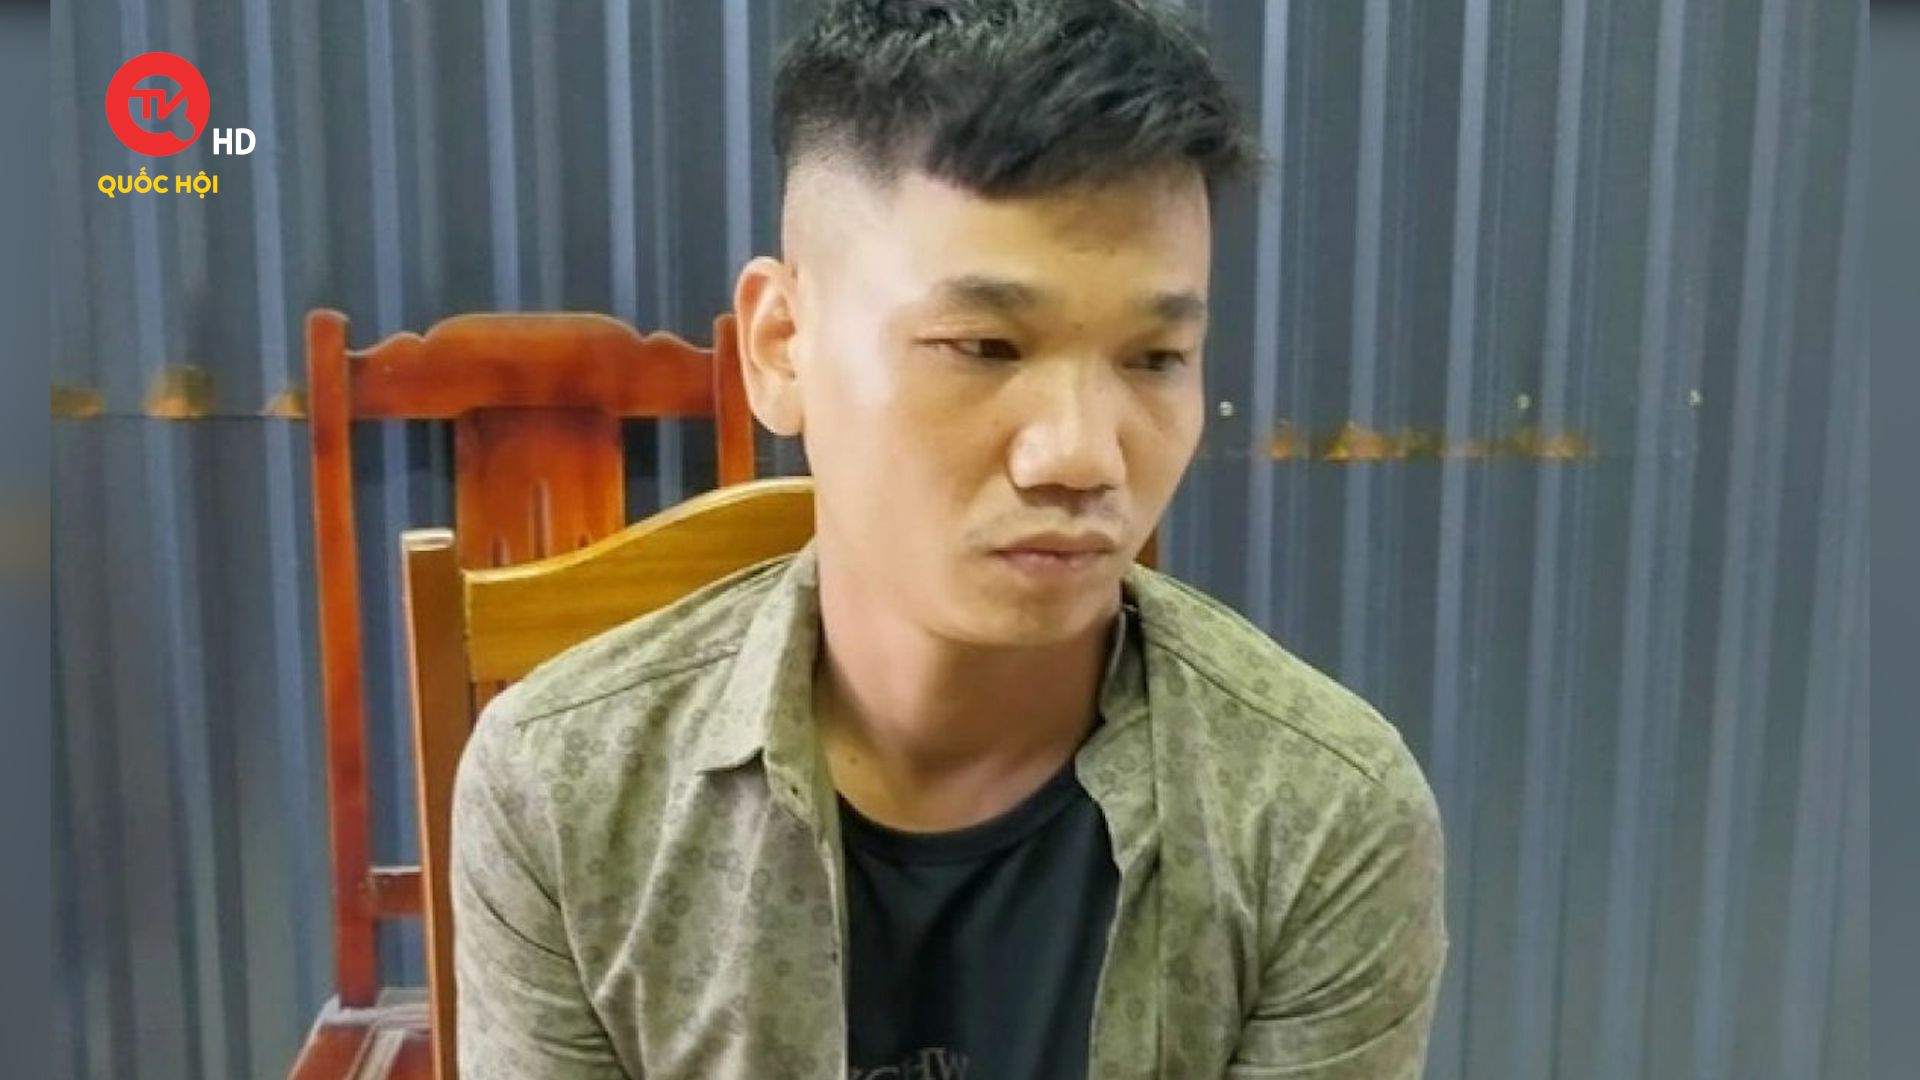 Phạm nhân vượt ngục tại Vĩnh Phúc, phá két trộm 200 triệu tại Tuyên Quang, bị bắt tại Thanh Hóa